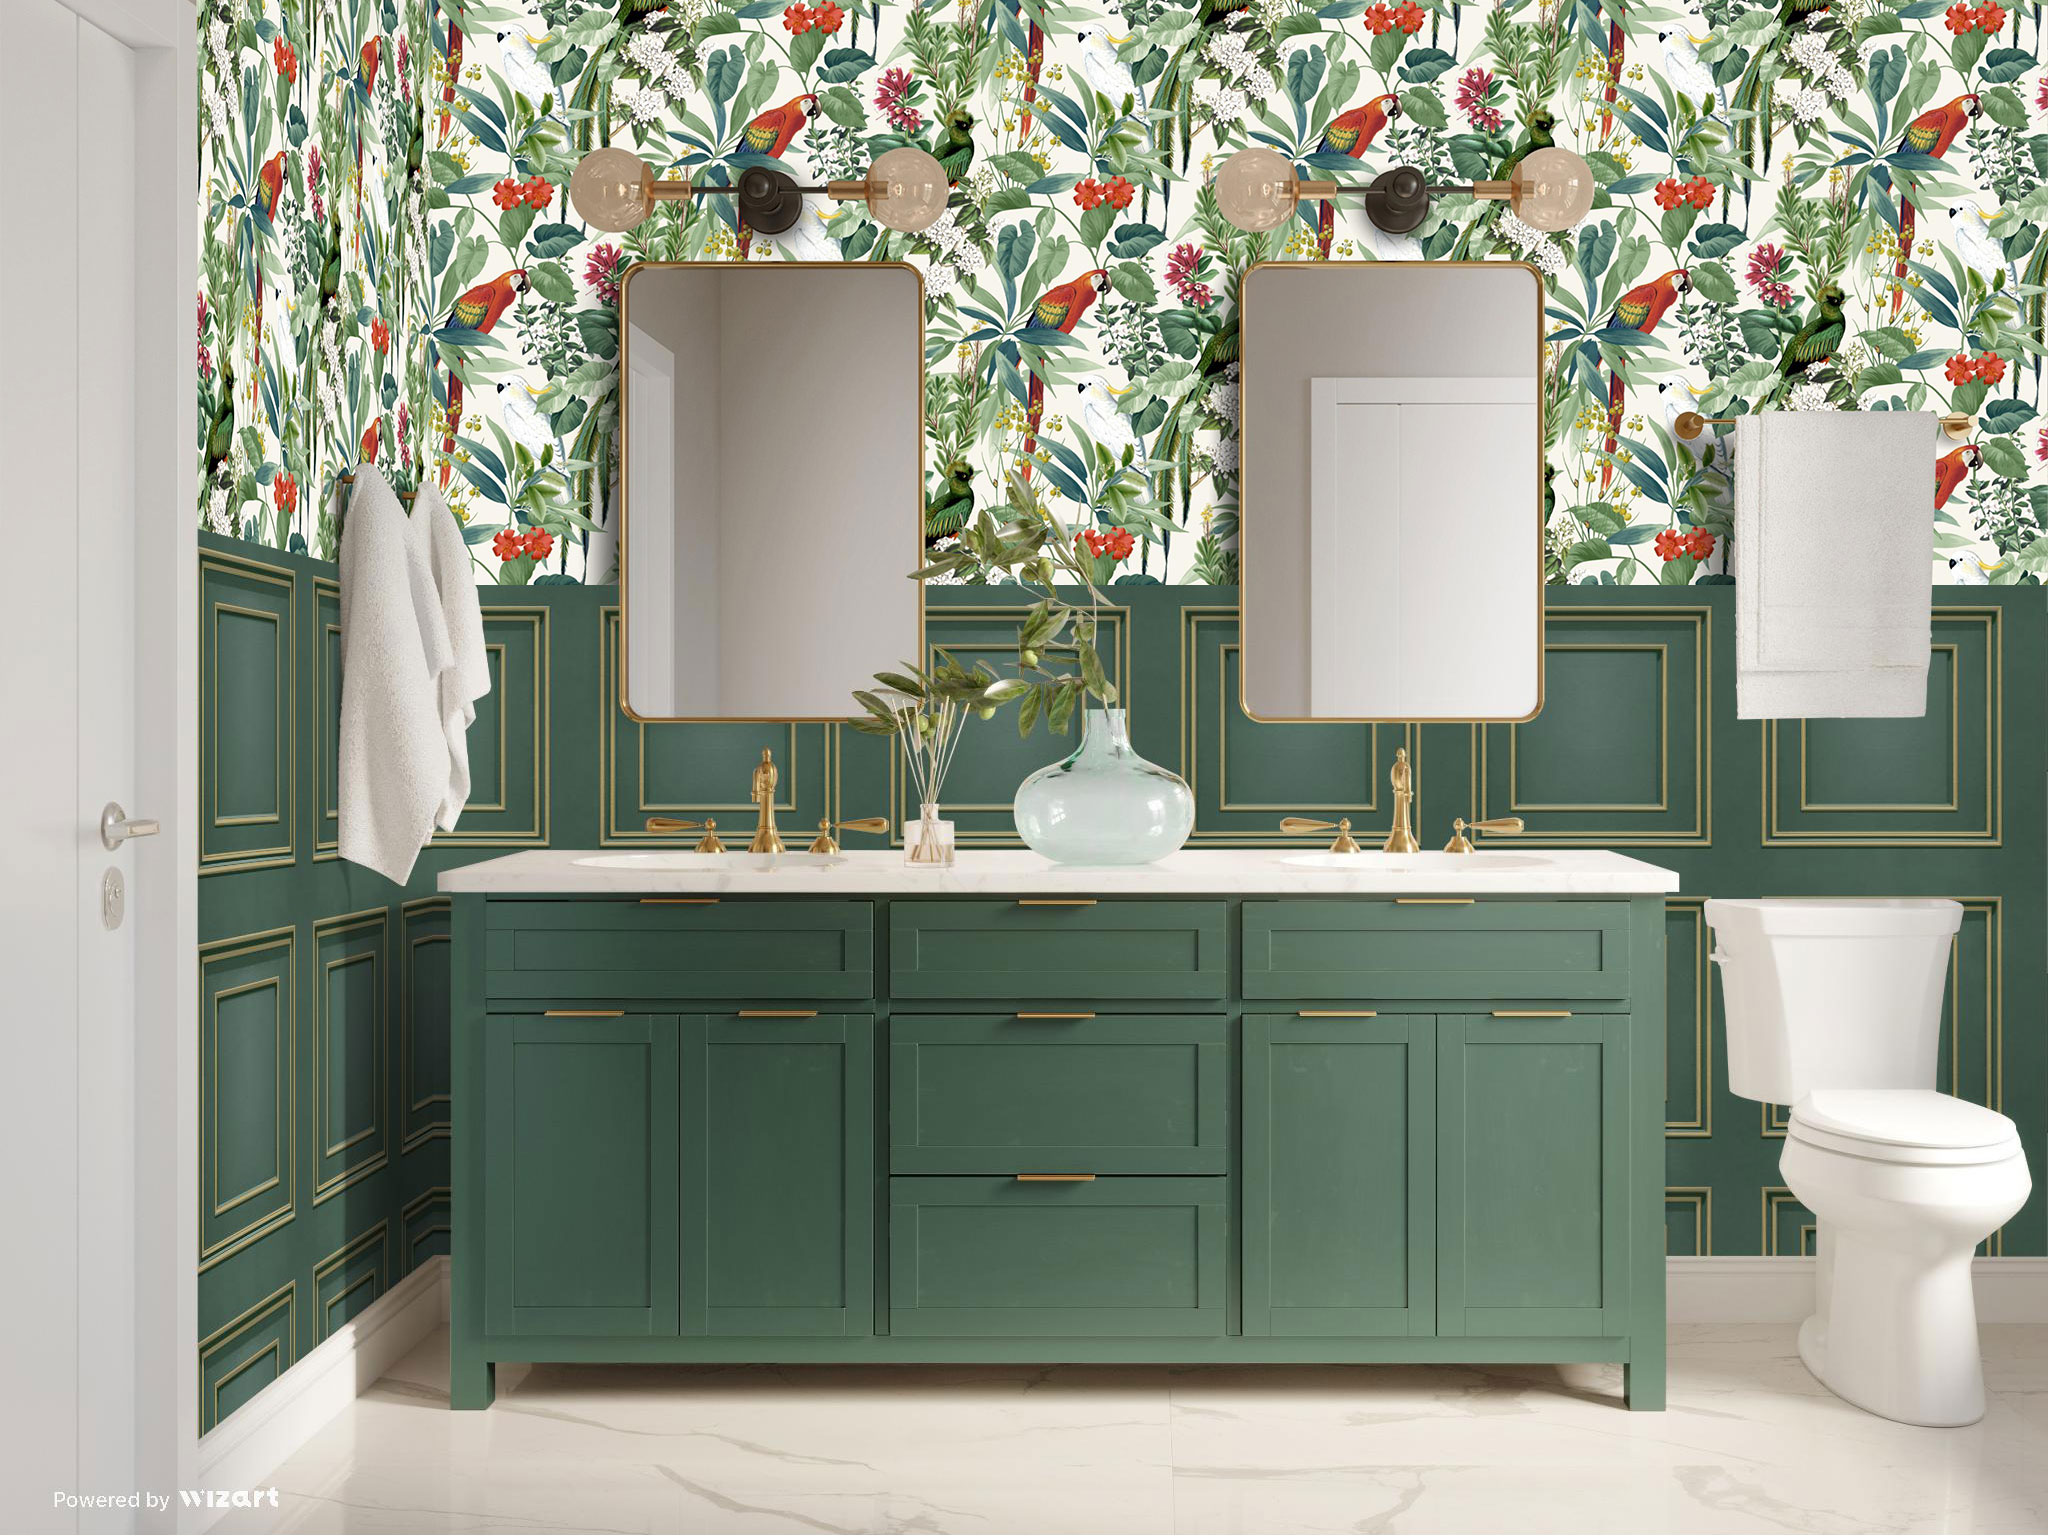 Bathroom Tiles that looks like Wallpaper | Wallpaper effect tiles